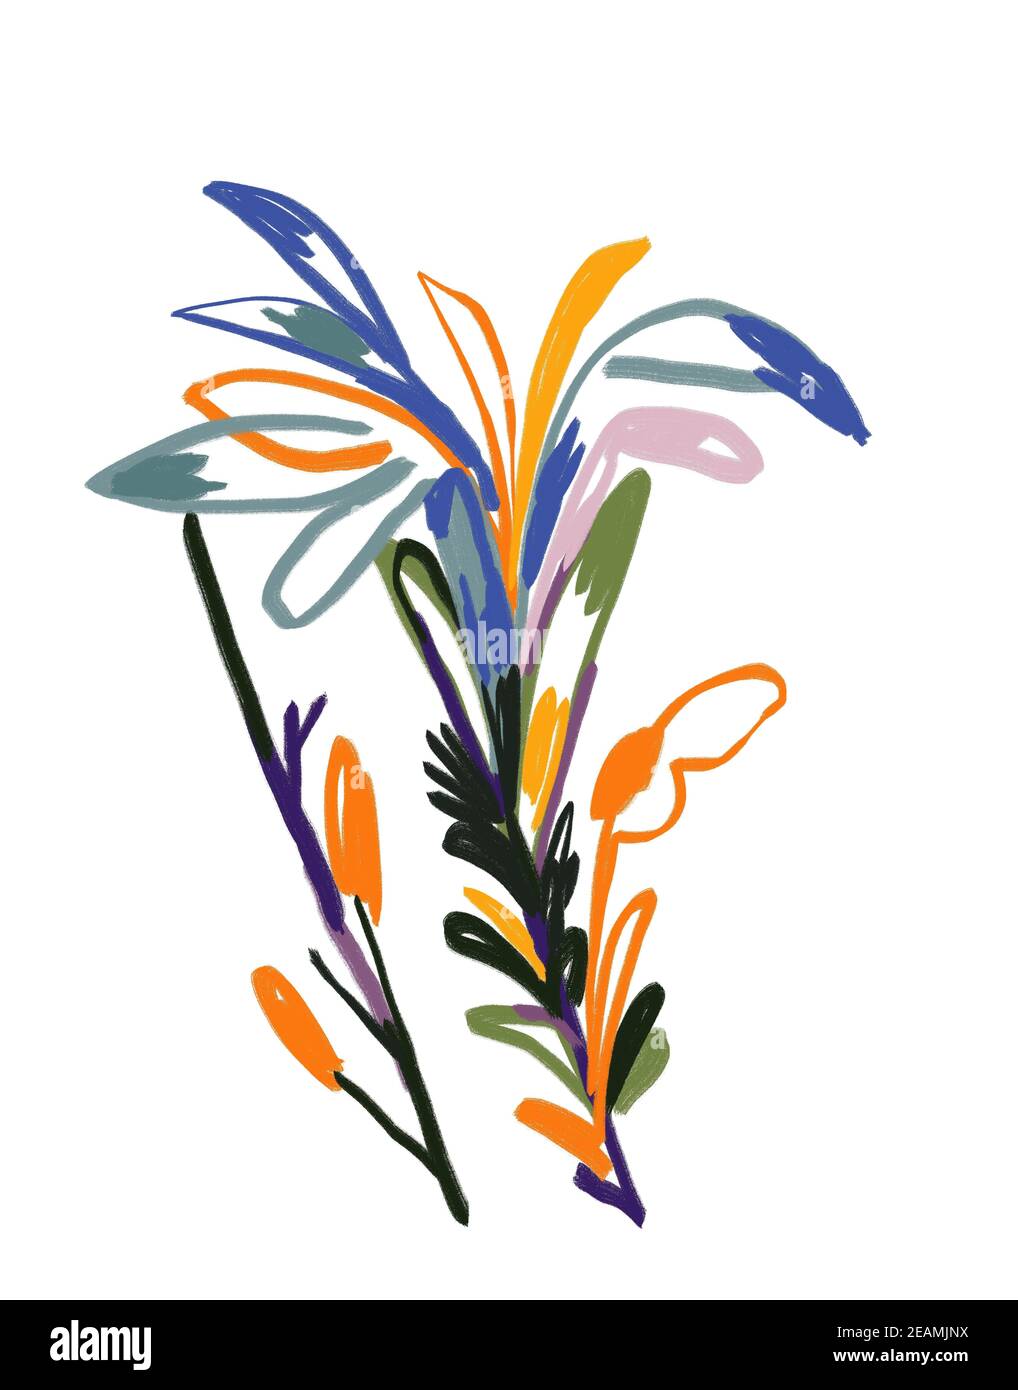 Abstrait peinture florale avec style Raoul dufy et Fauvism. Art moderne et tendance pour l'impression et l'affiche. Illustration isolée sur blanc. Banque D'Images